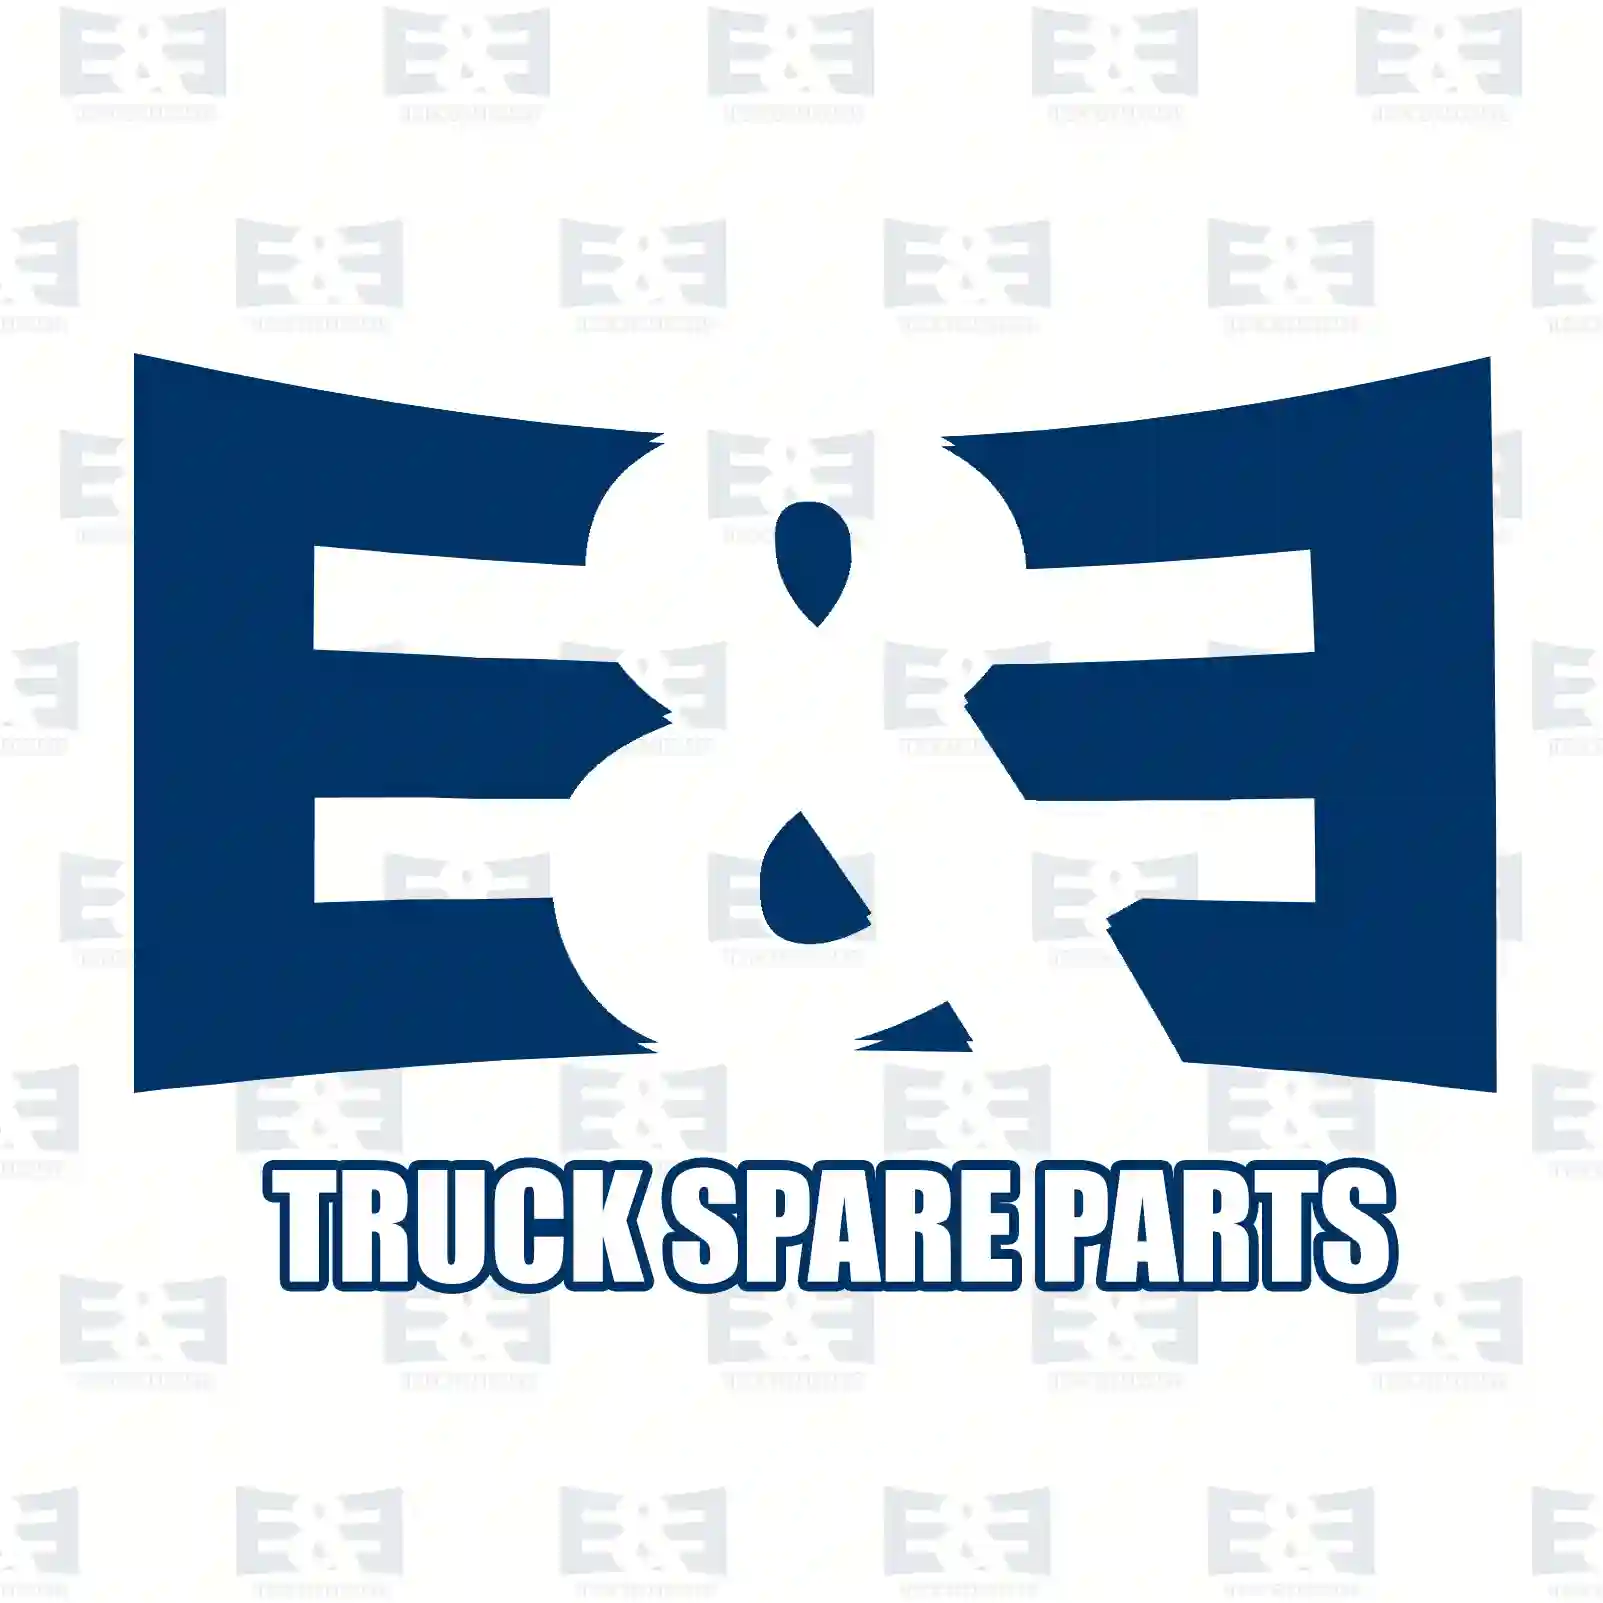  EBS valve || E&E Truck Spare Parts | Truck Spare Parts, Auotomotive Spare Parts